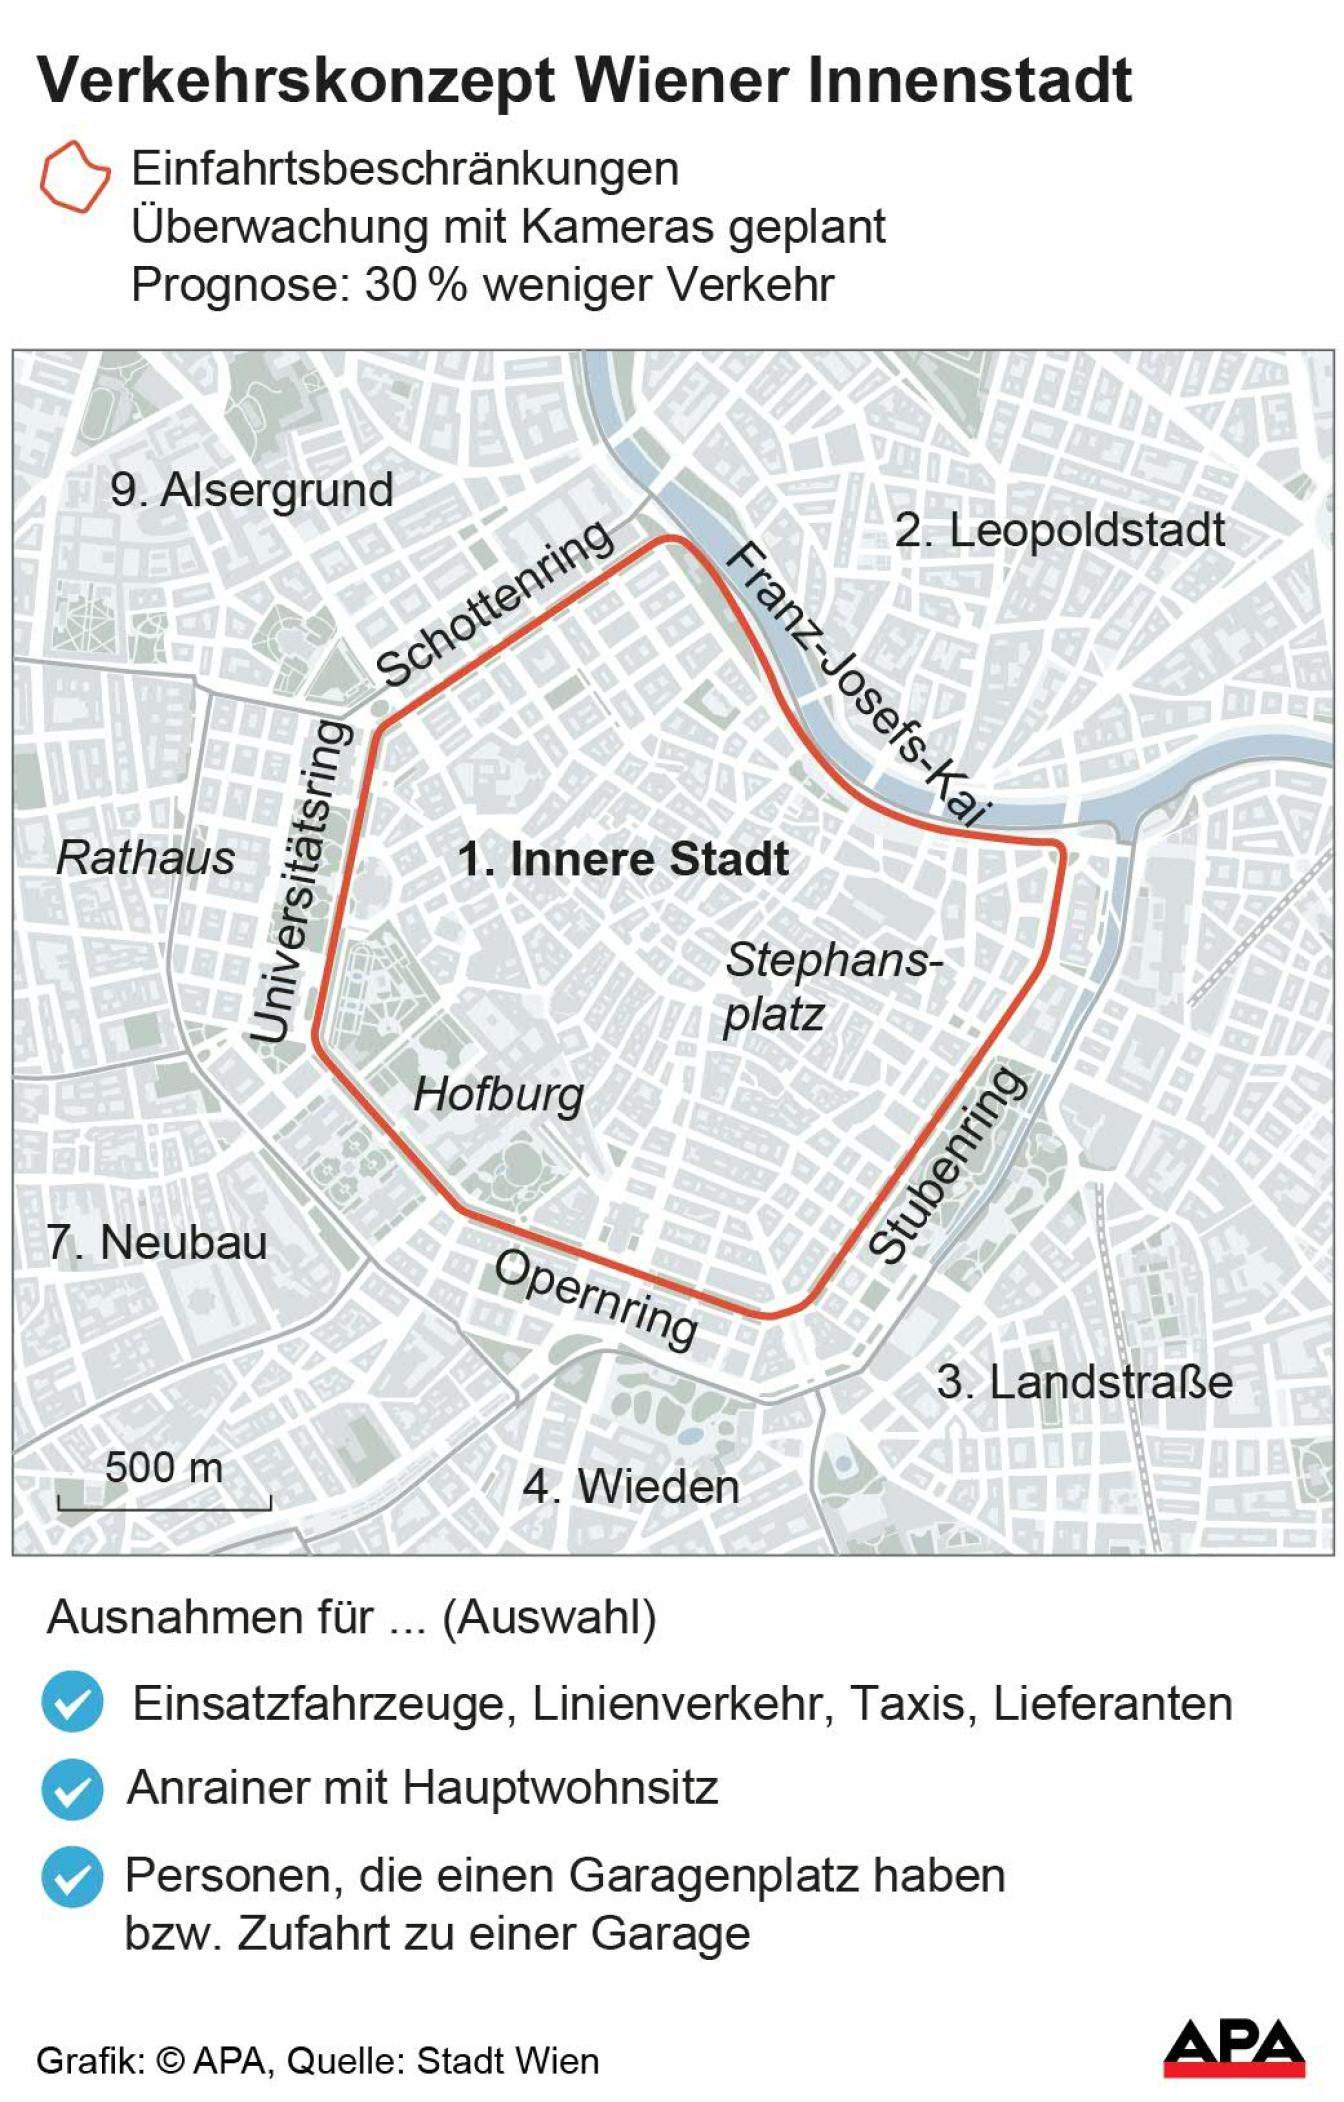 Verkehrskonzept Wiener Innenstadt